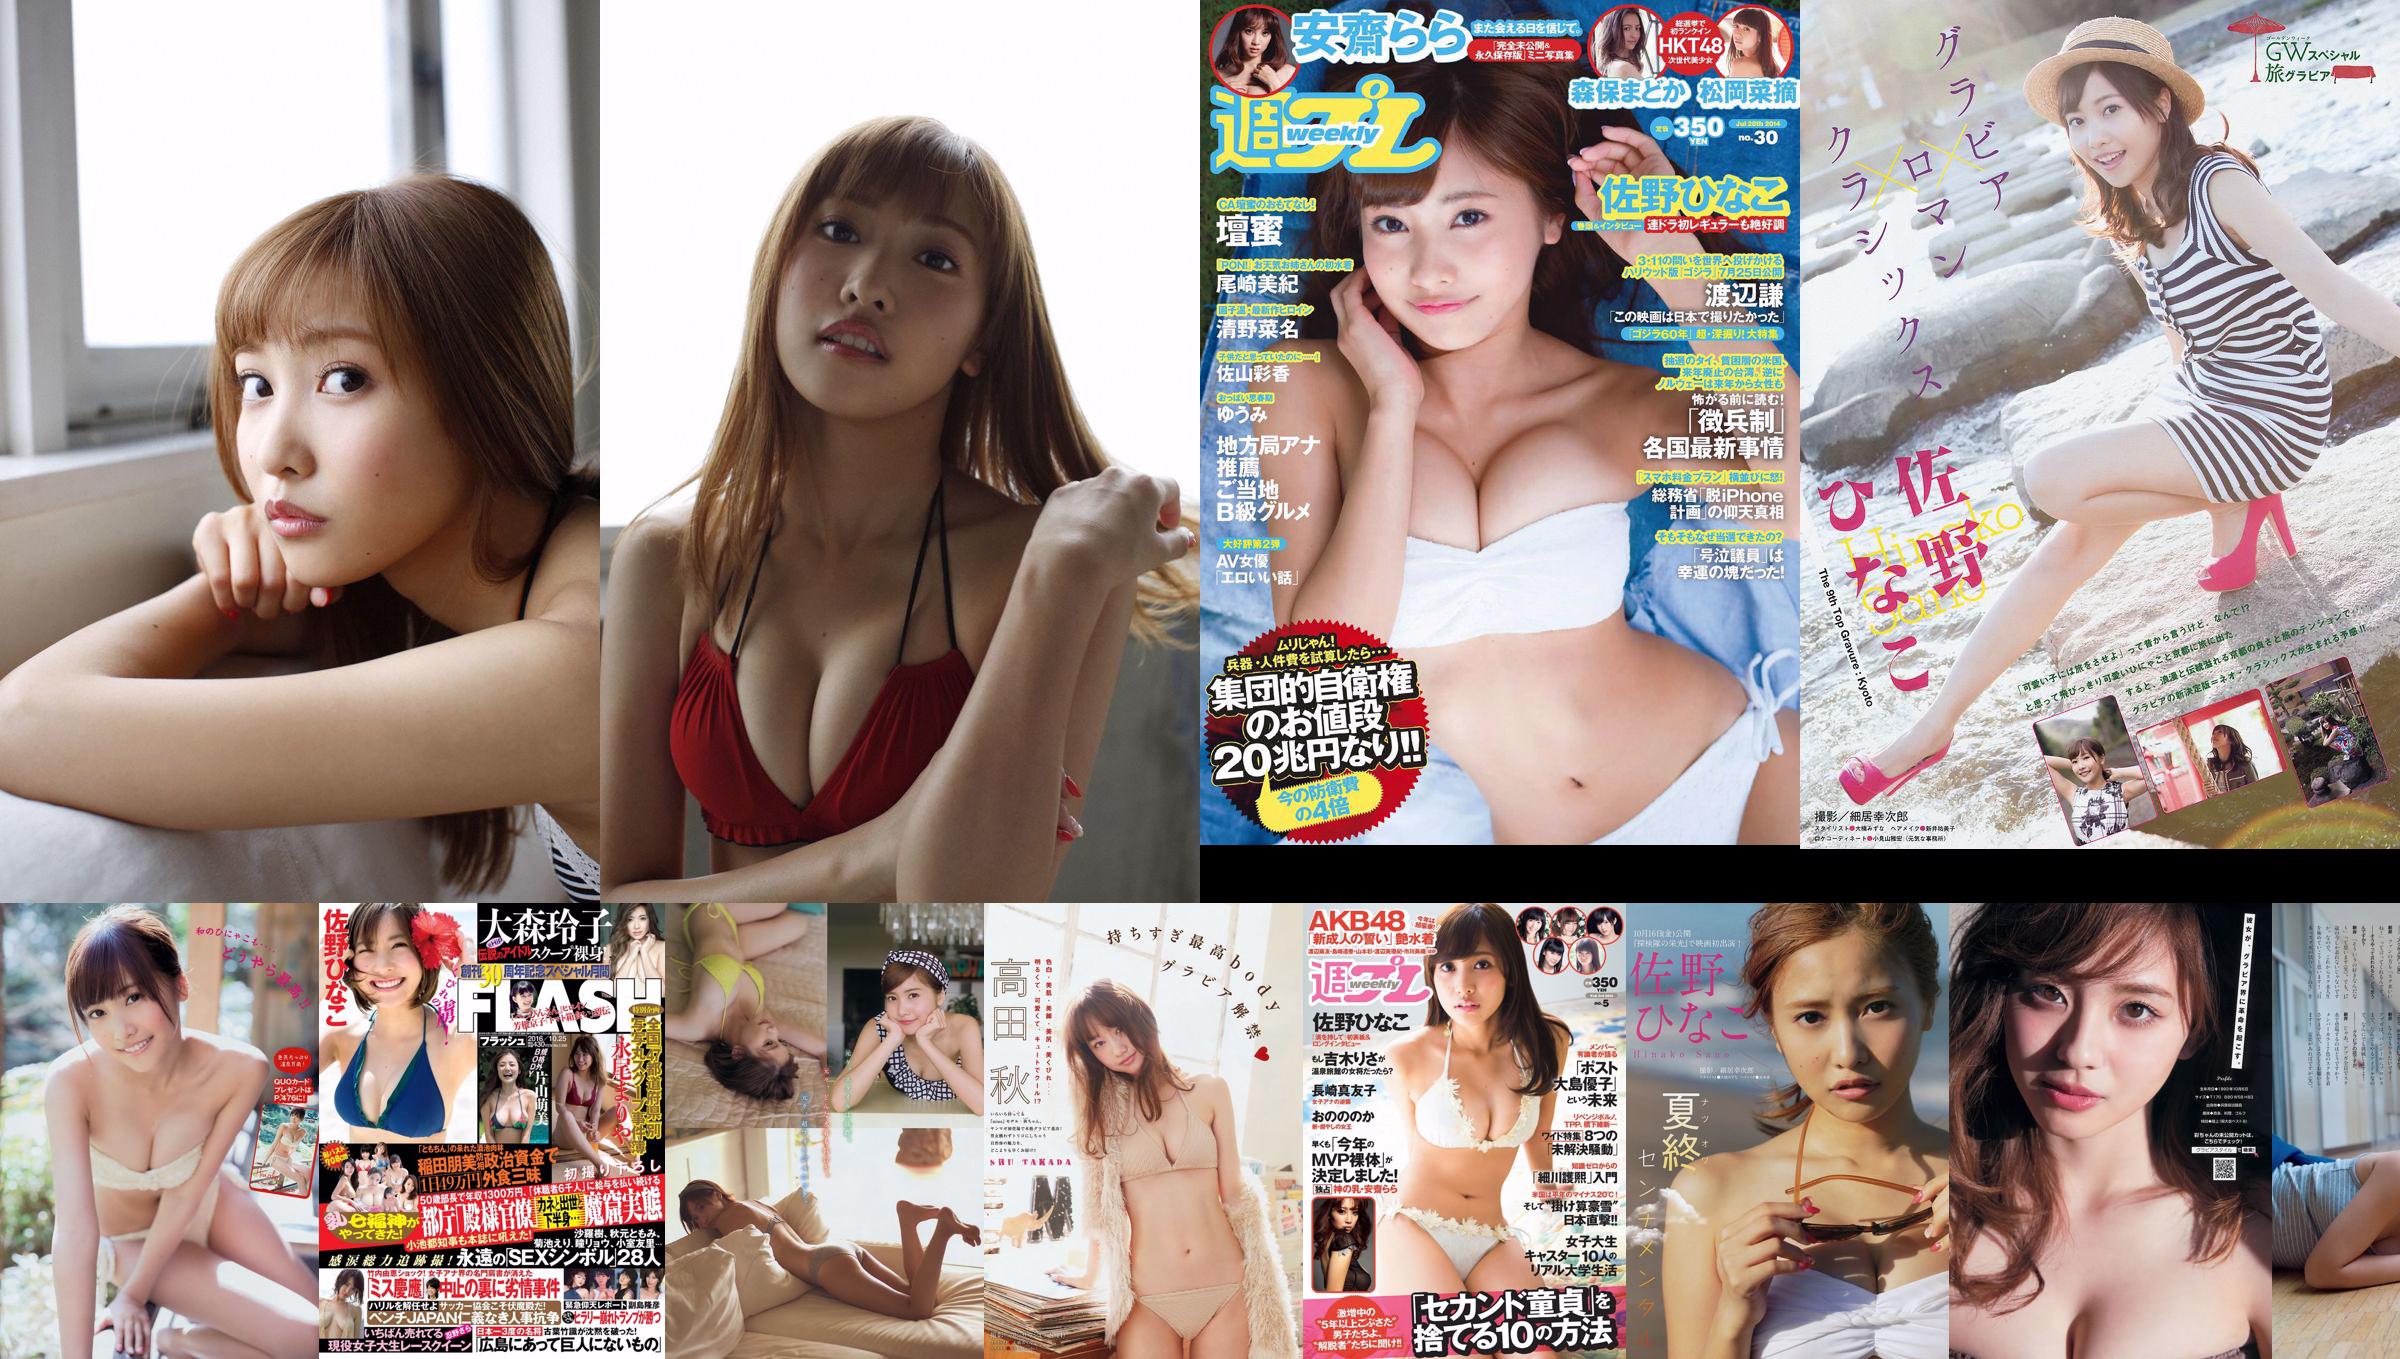 [Junges Magazin] Hinako Sano Kana Fujita 2015 Nr. 33 Foto No.6403c9 Seite 3